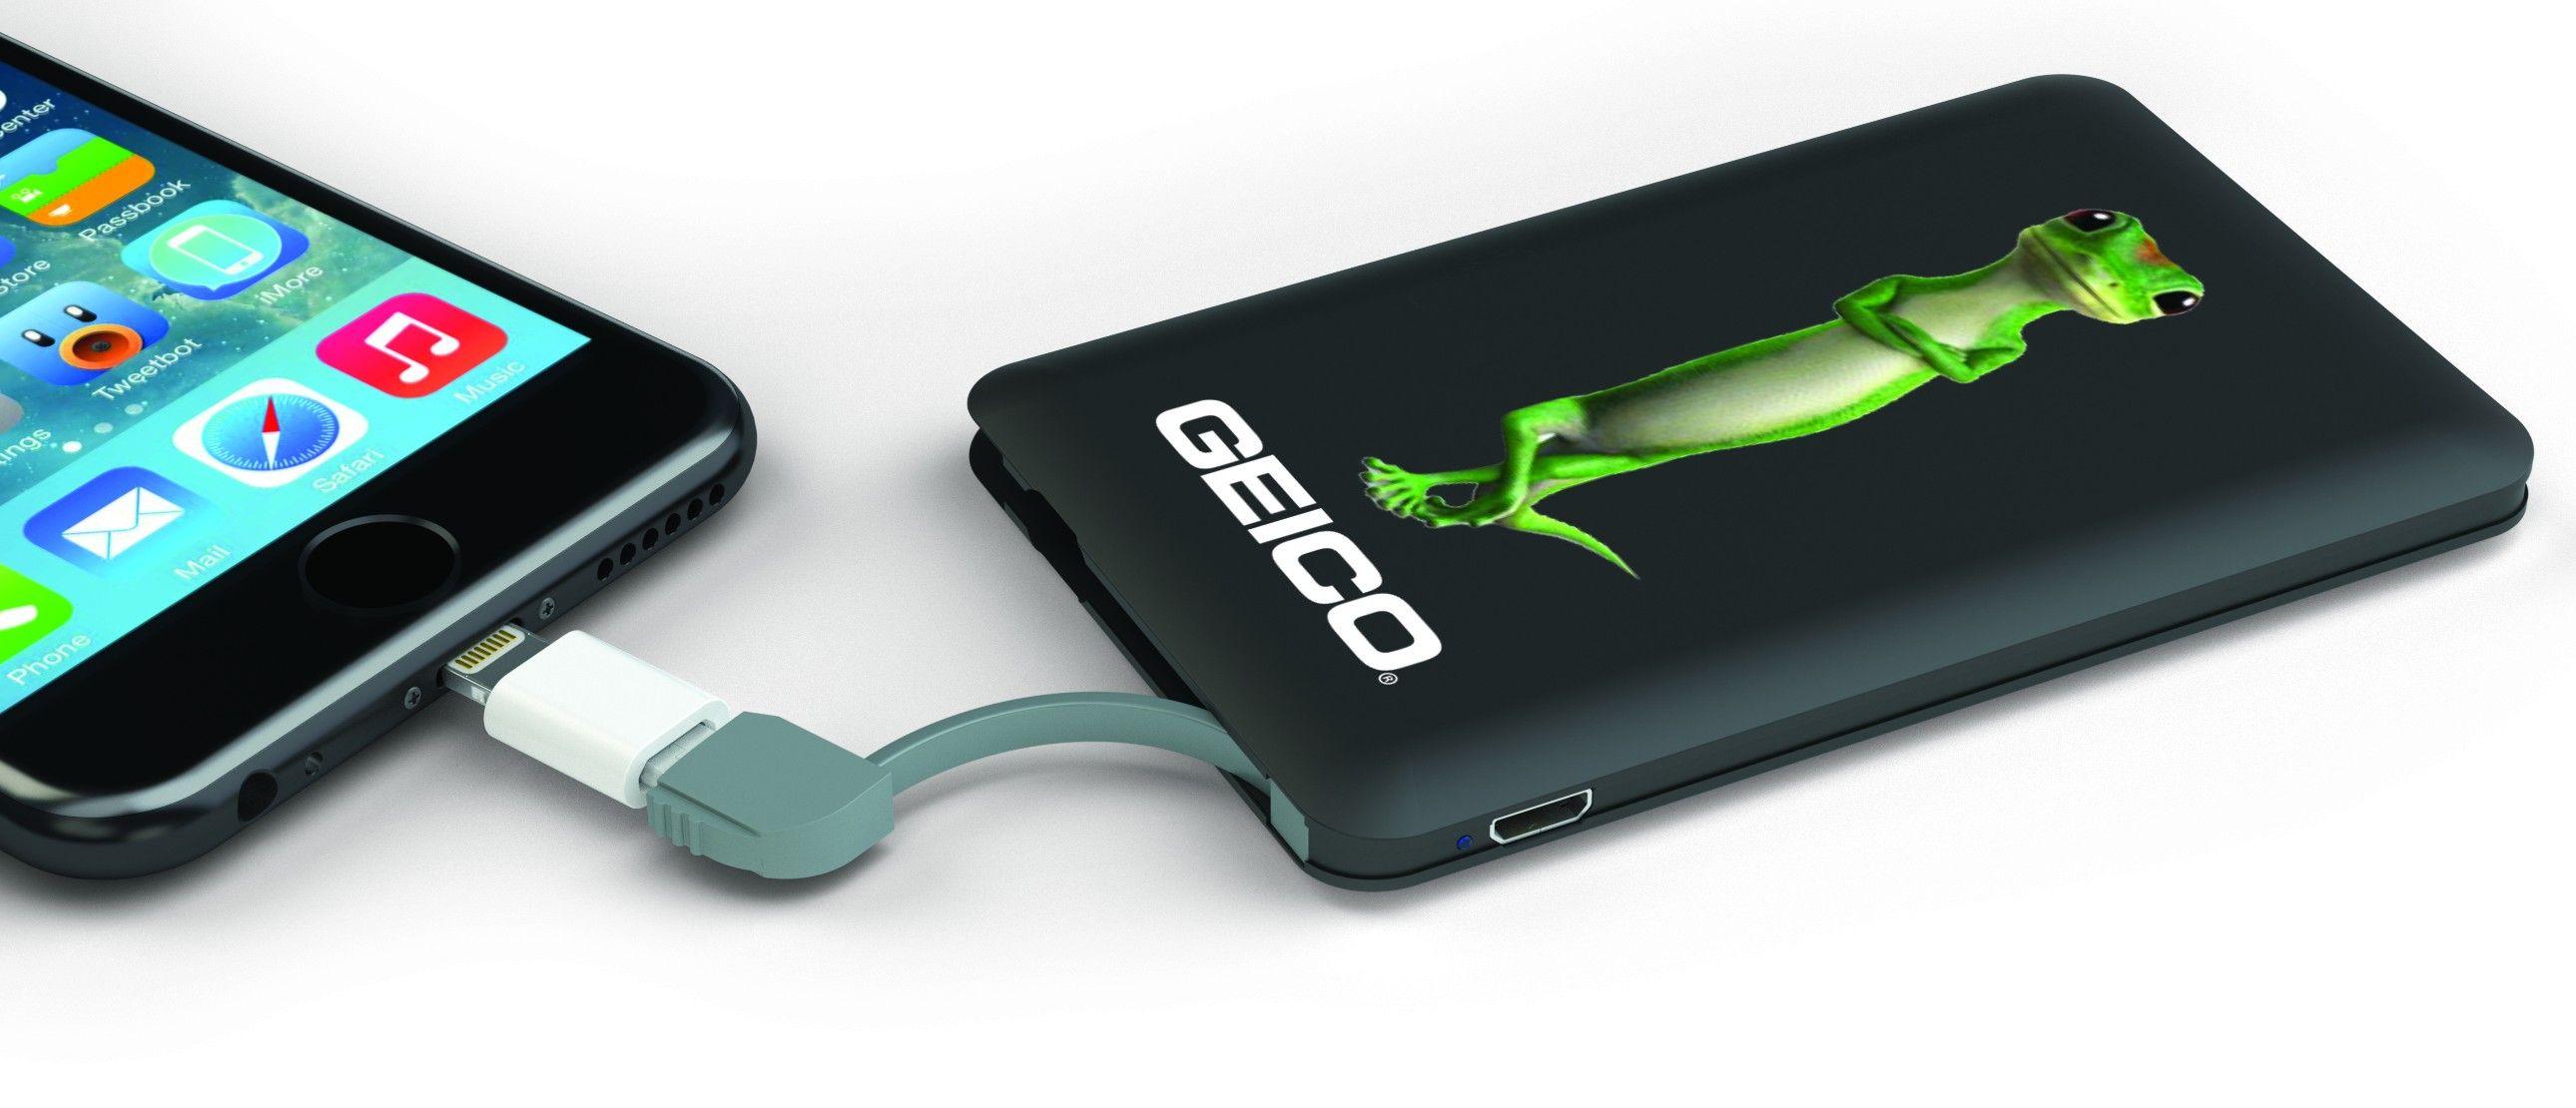 GEICO Gecko Logo - GEICO Powercard XL with Gecko Logo - Tech - Shop